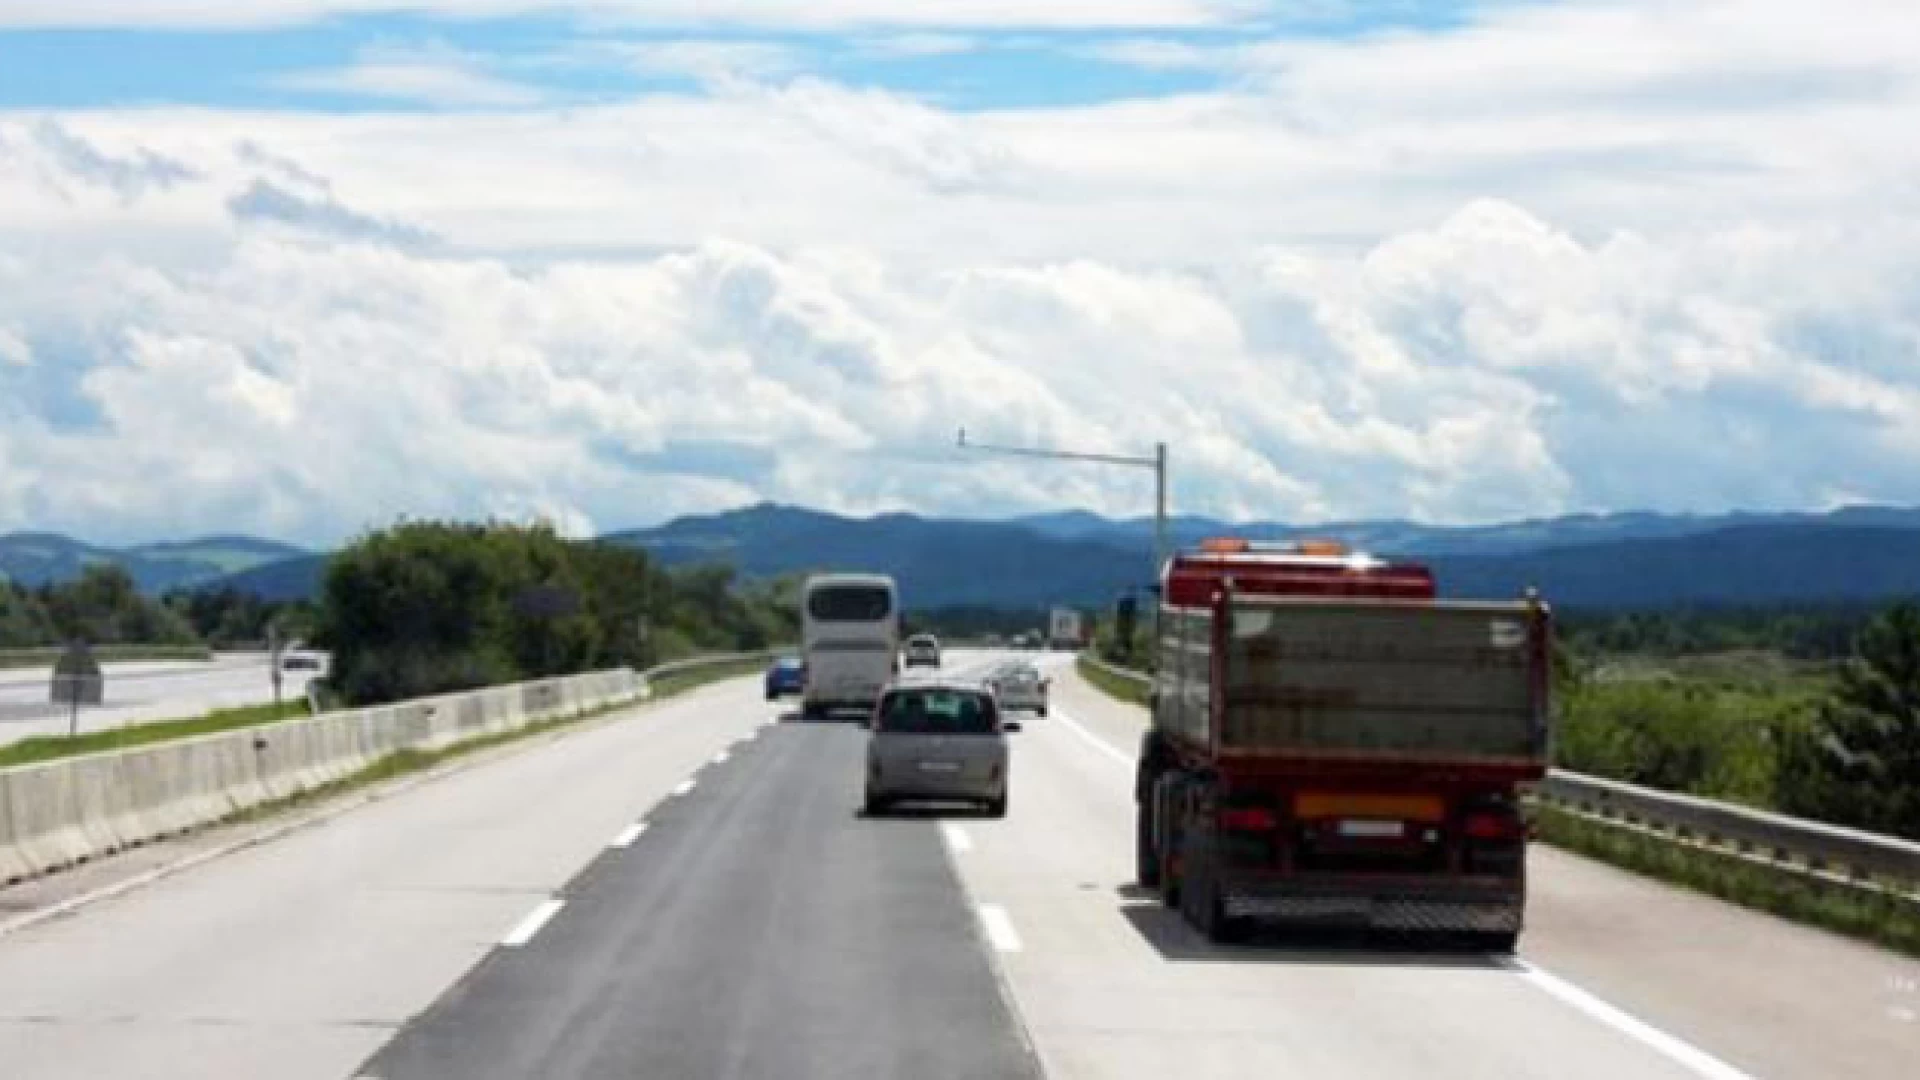 Viabilità e sviluppo: occorre un nuovo casello autostradale tra Campania e Molise. L’appello del Cisas.